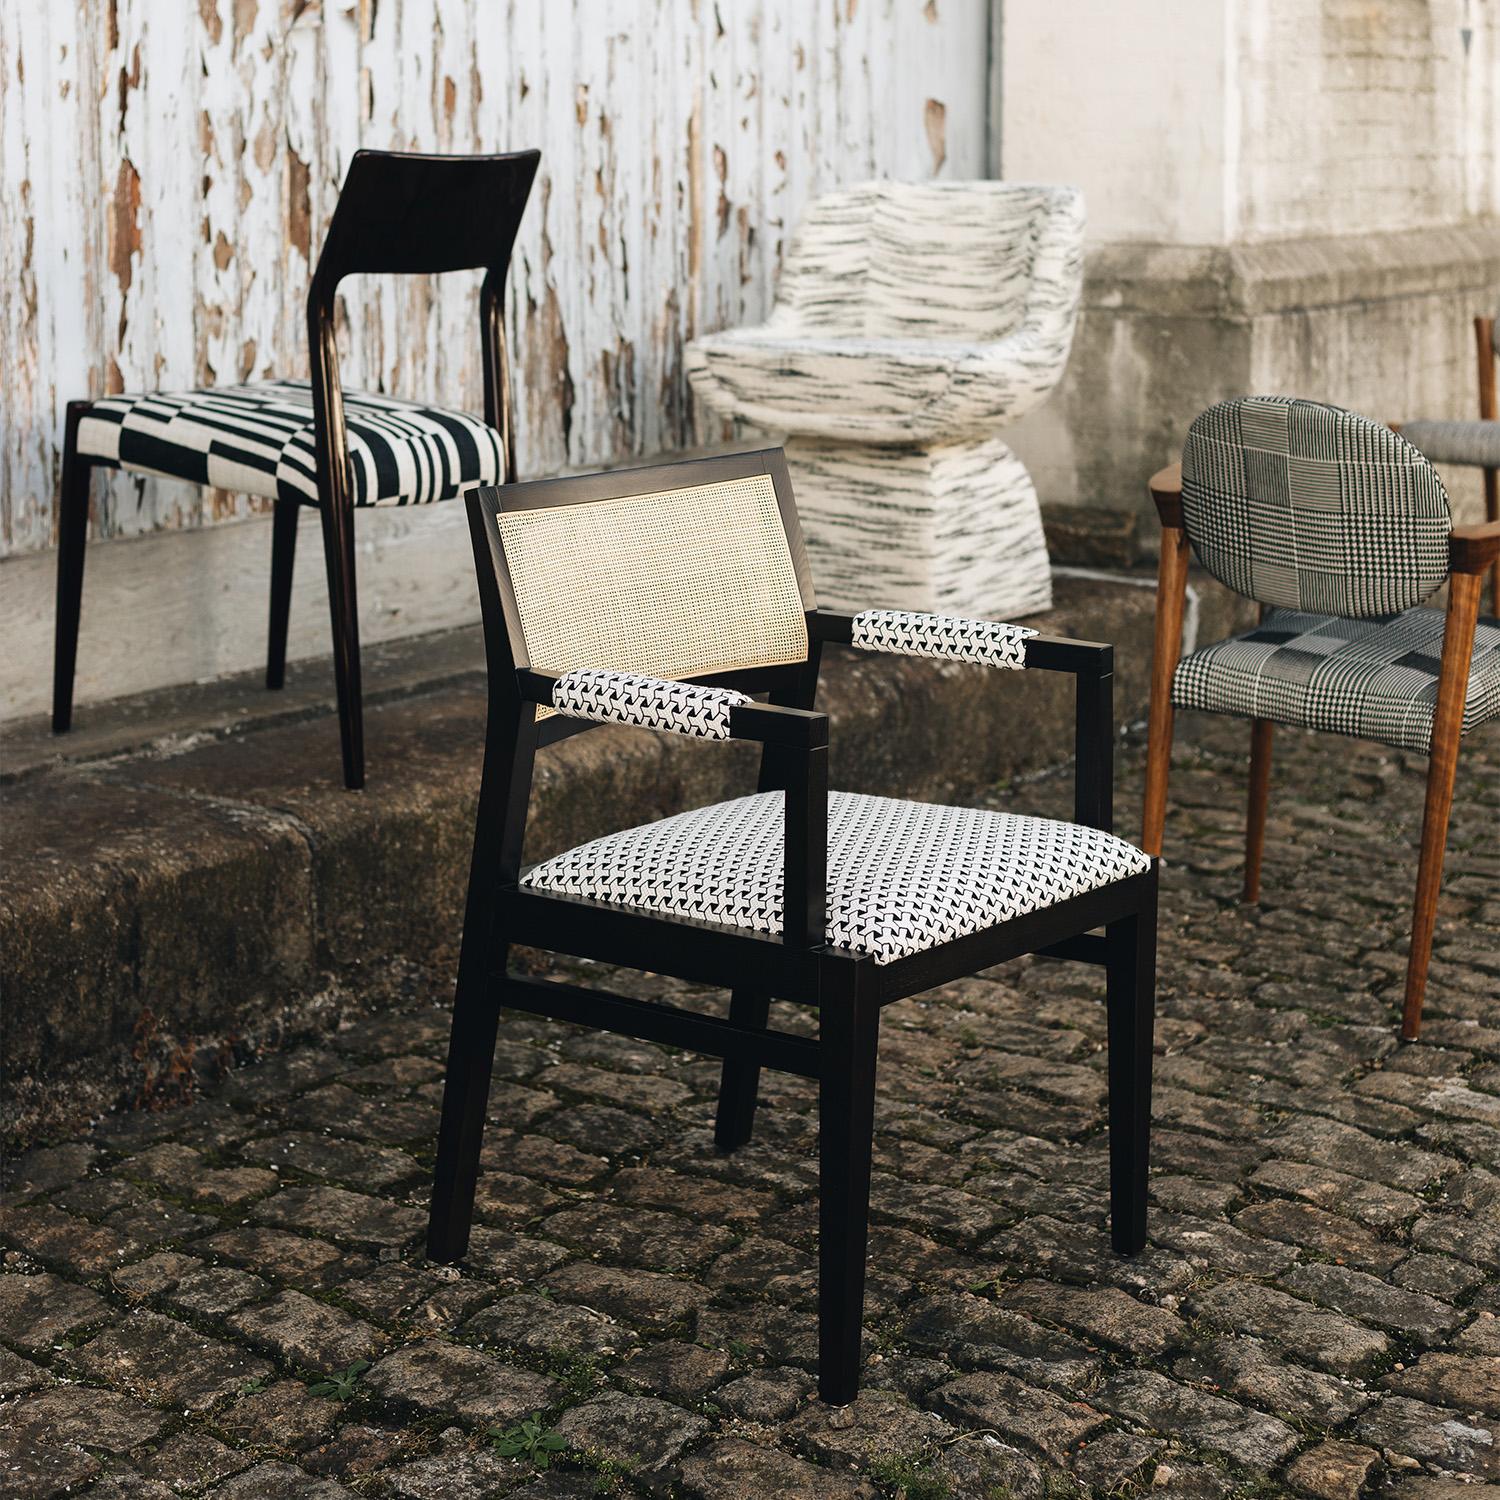 Duistt Basic Chair 1.1, Eschenholz dunkel, handgefertigt in Portugal von Duistt

Duistt Basic 1.0 schwebt mit einem gut gepolsterten Sitz zwischen zwei geschwungenen Armlehnen, die an die klassische Schneiderei erinnern. Ein wahrhaft zeitloser Look